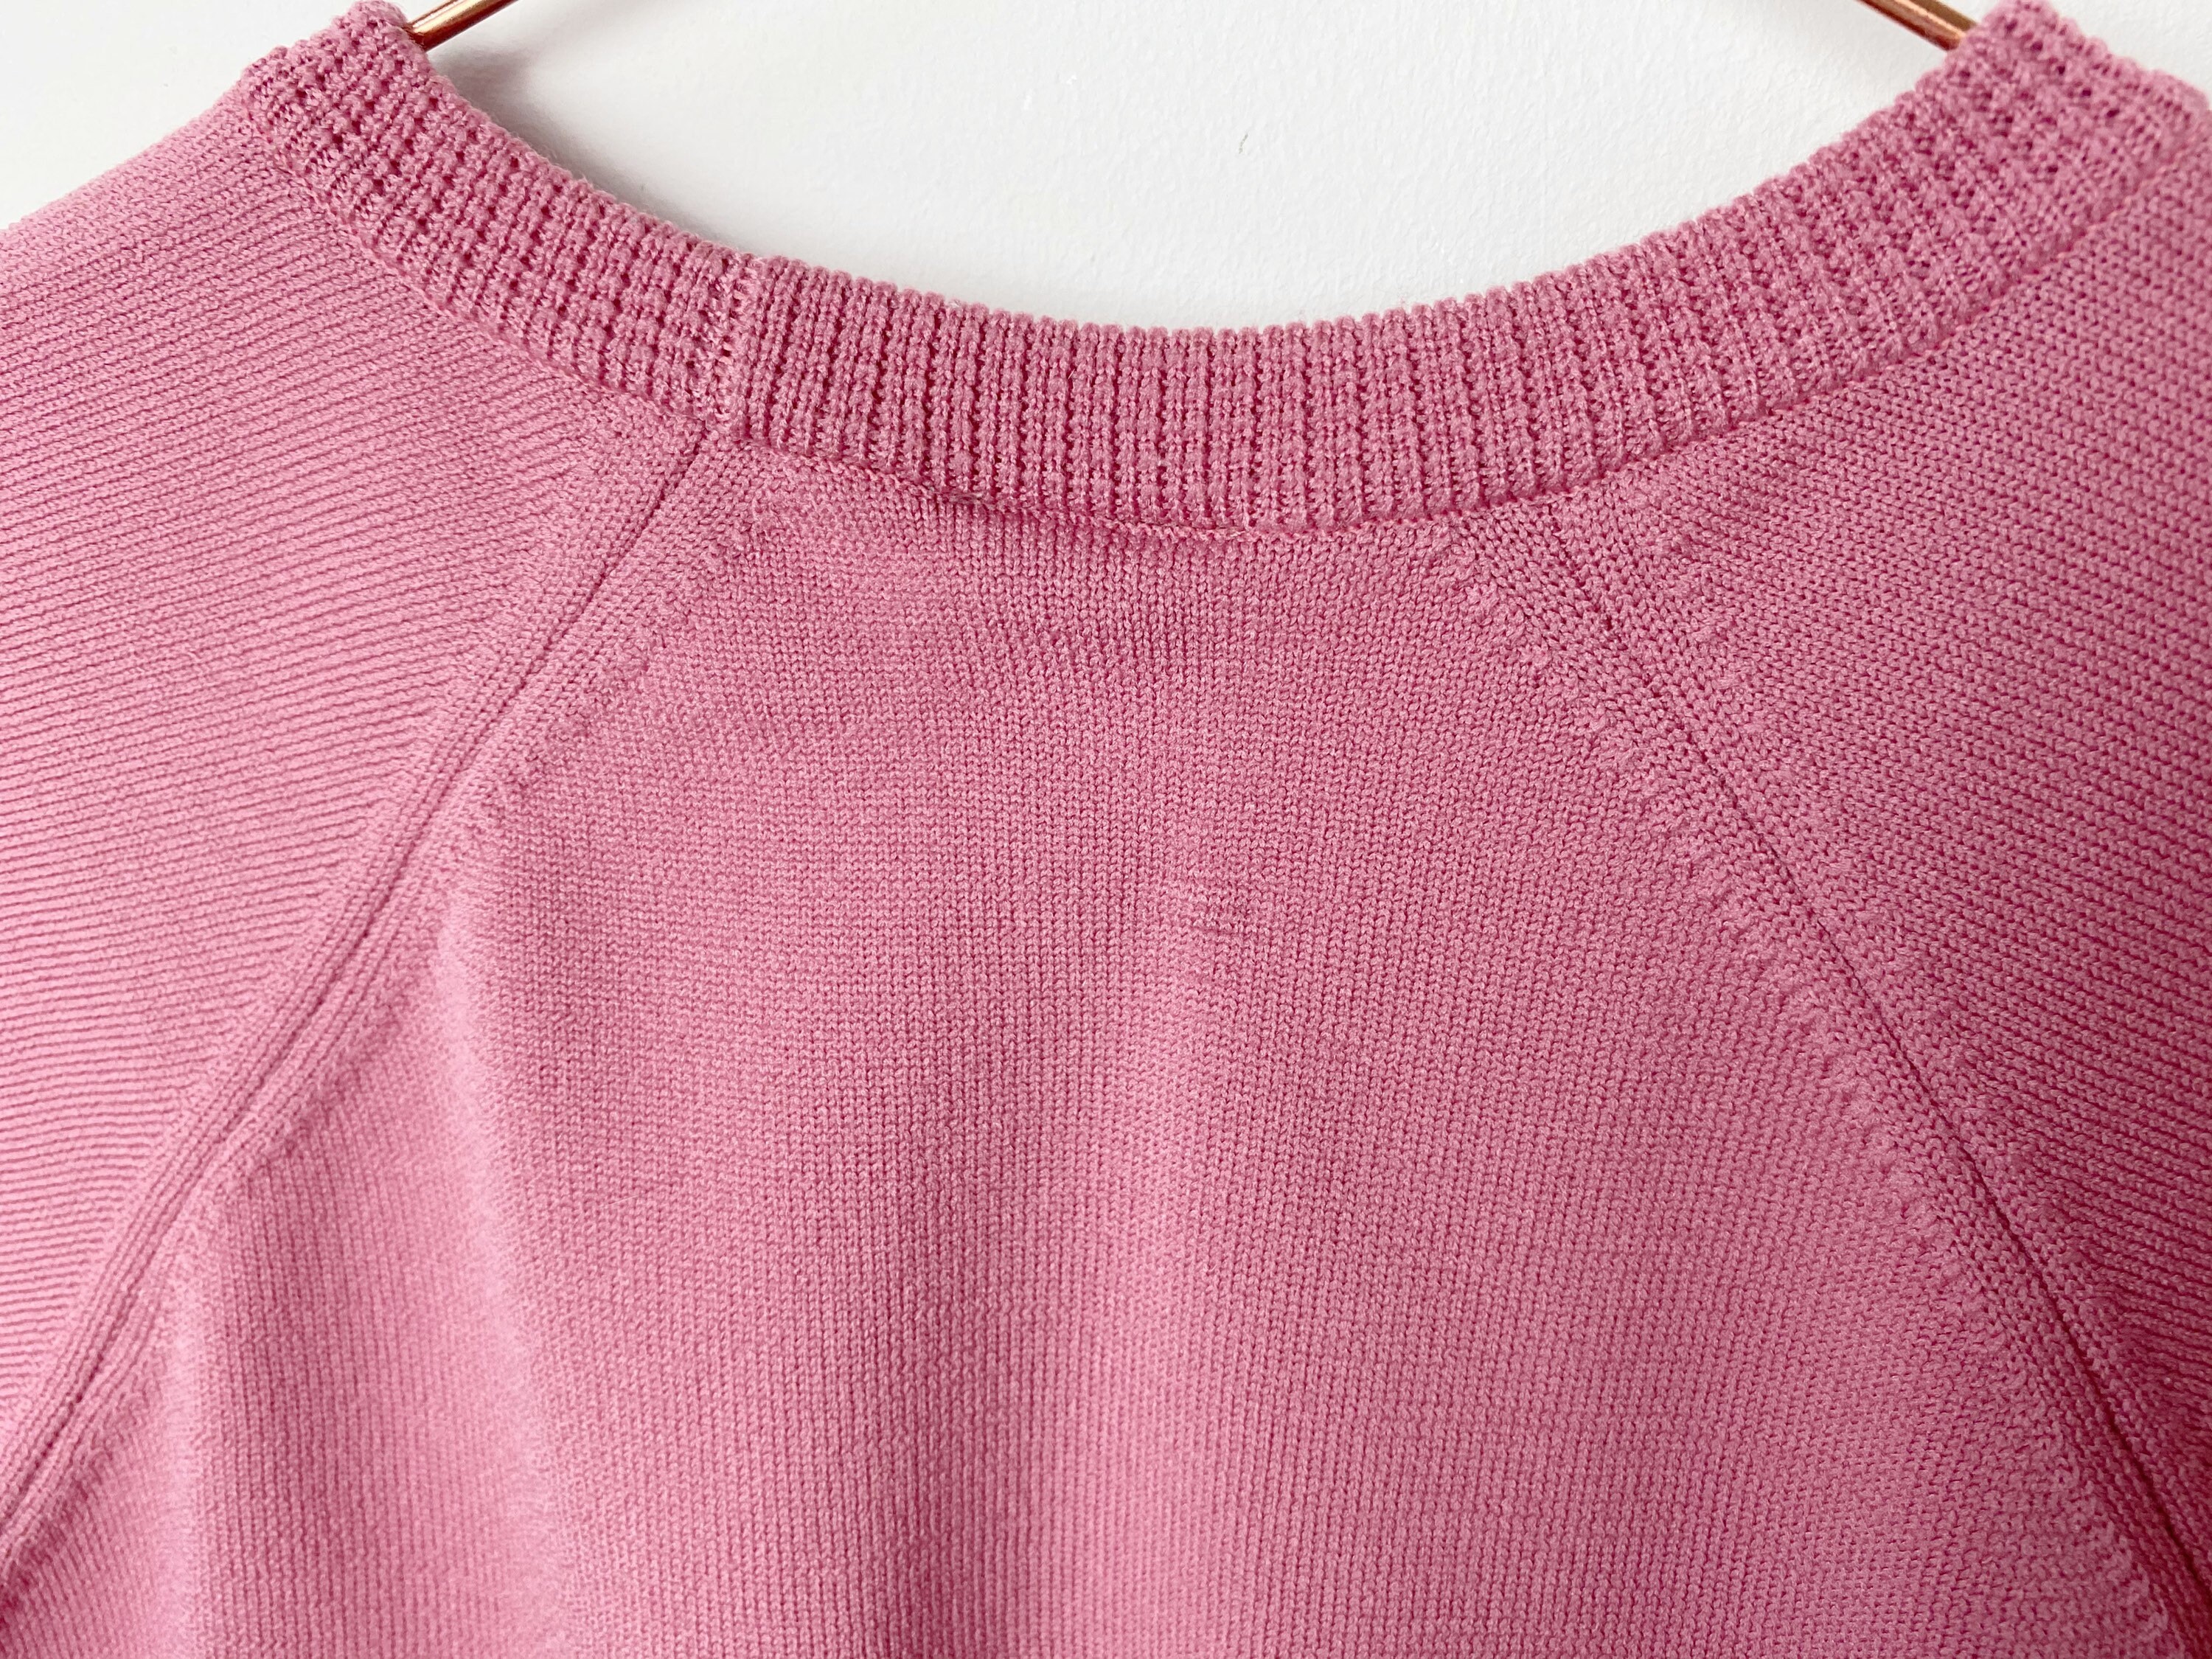 Medium Fit 1980s Pink Top Dark Pink Top Vintage Womenswear | Etsy UK